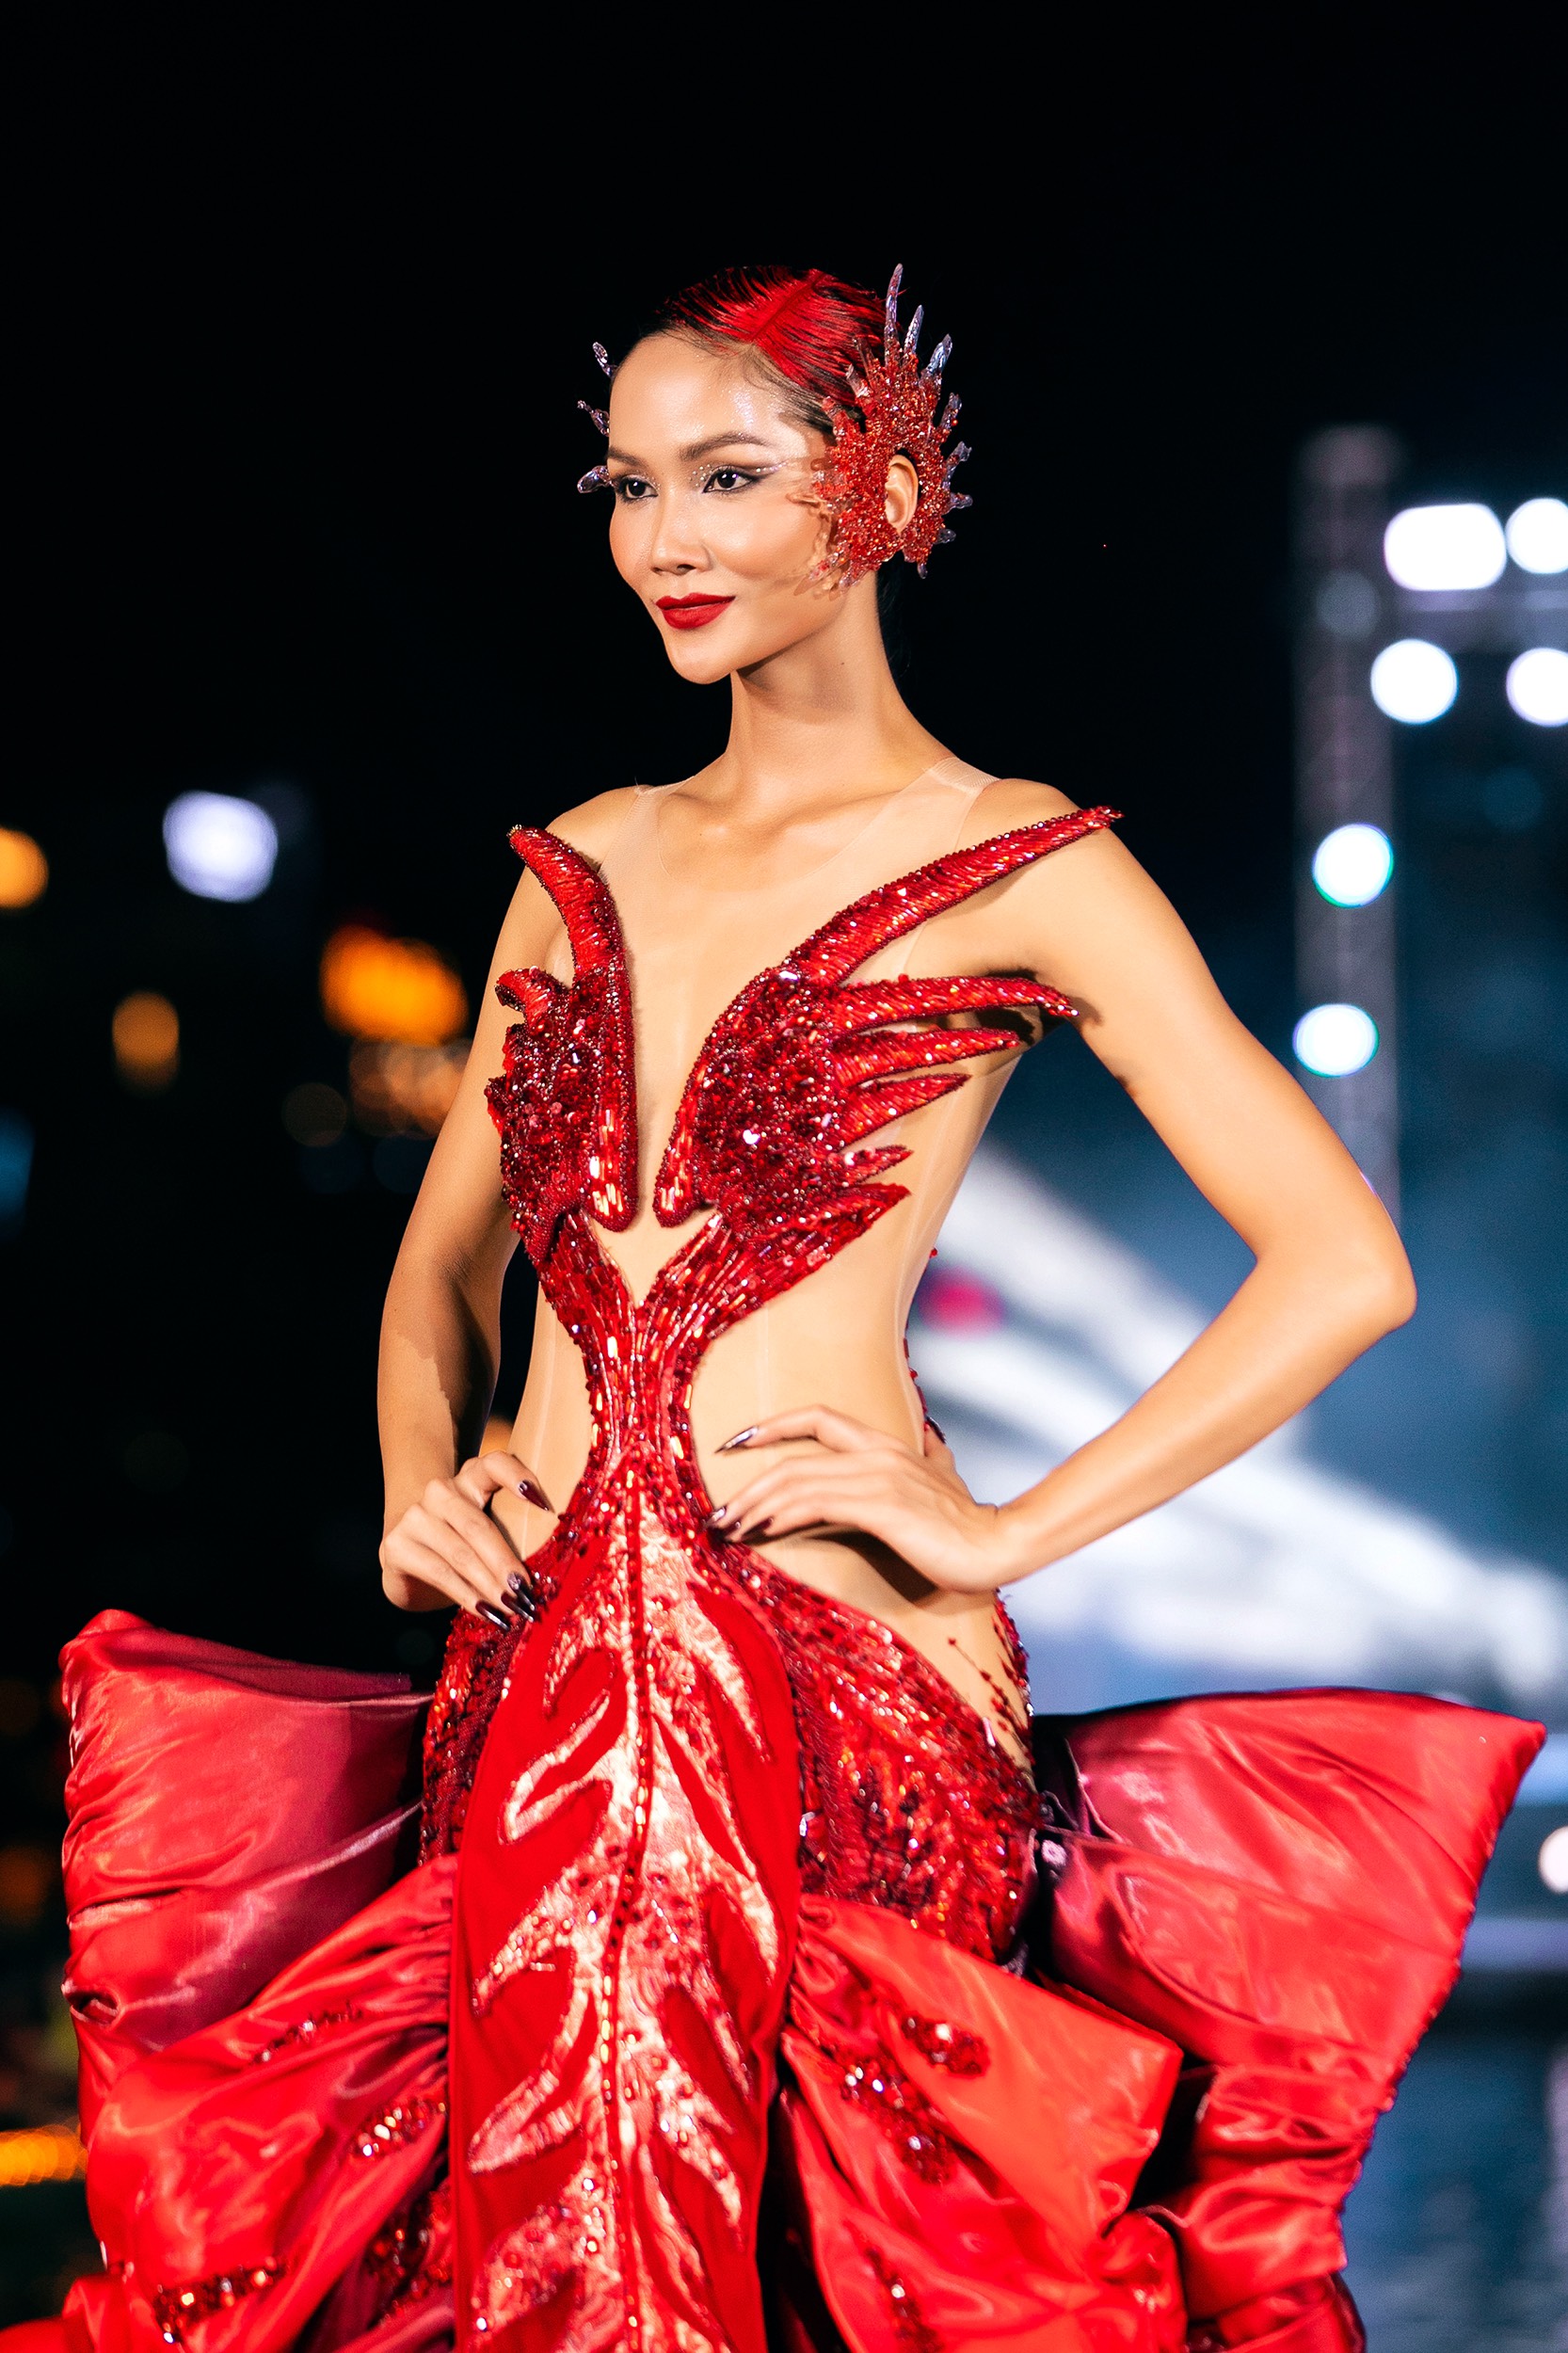 Hoa hậu H’Hen Niê hóa Phượng hoàng lửa trên sàn diễn thời trang - ảnh 1